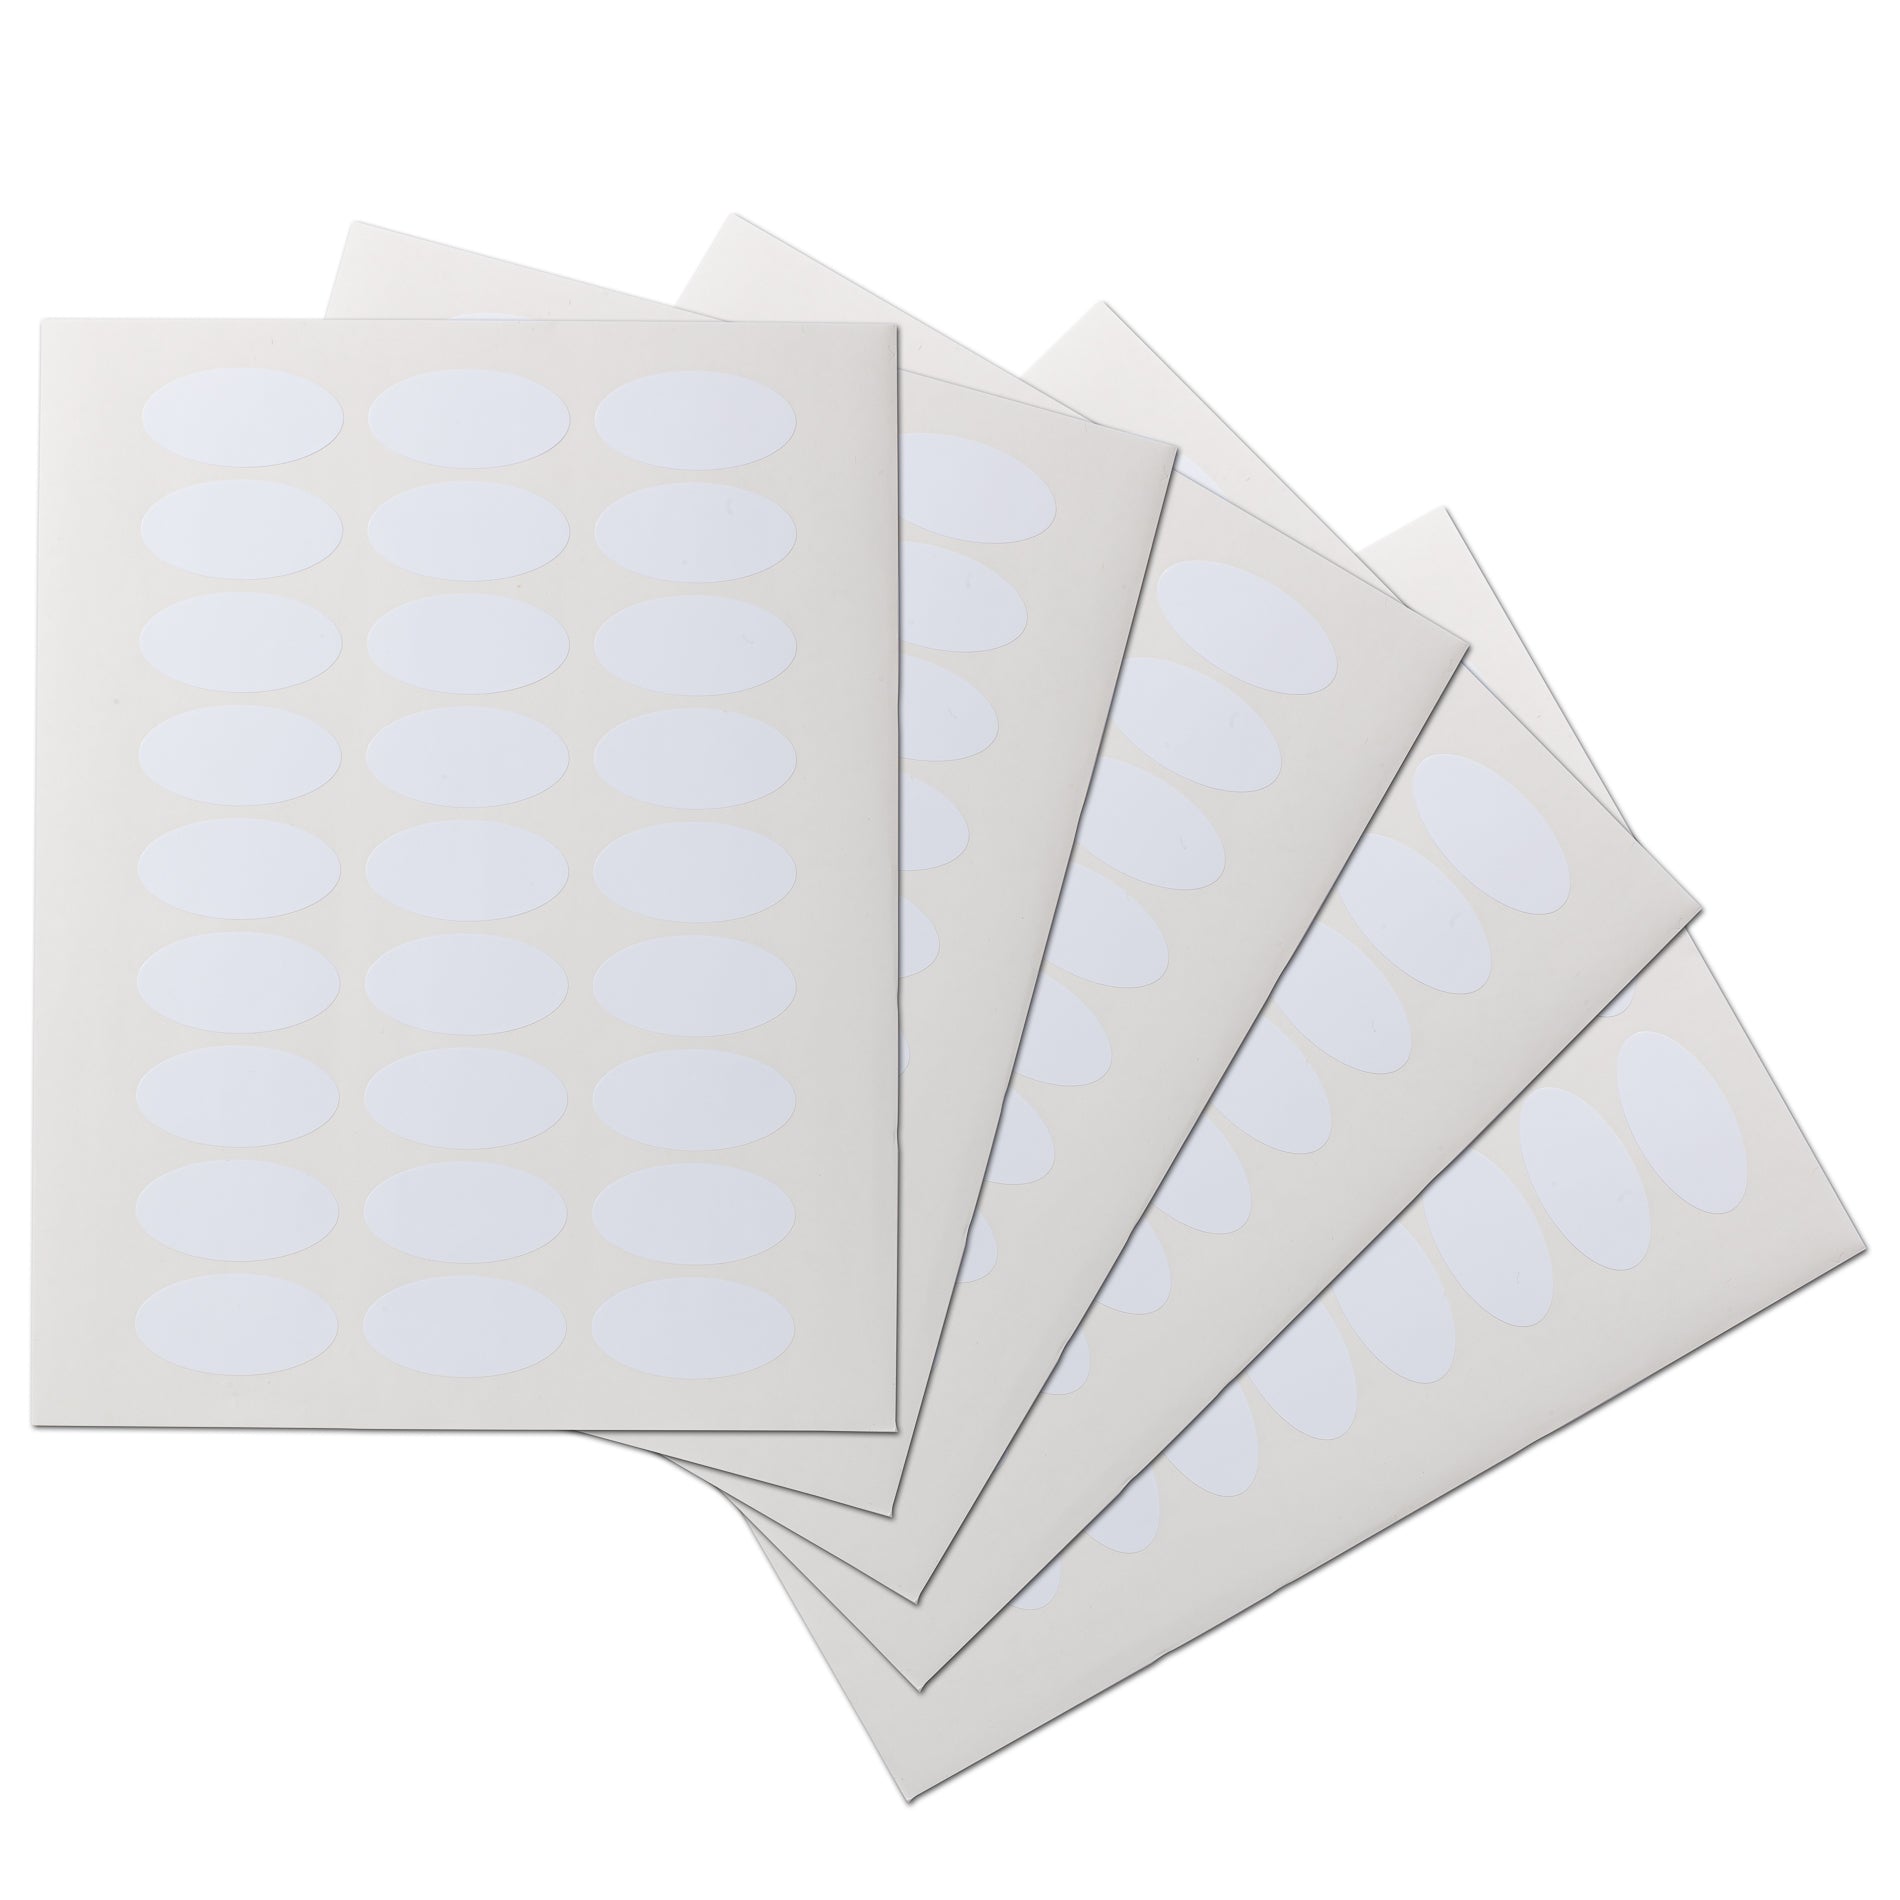 2x1 Oval Waterproof Labels, Blank, White